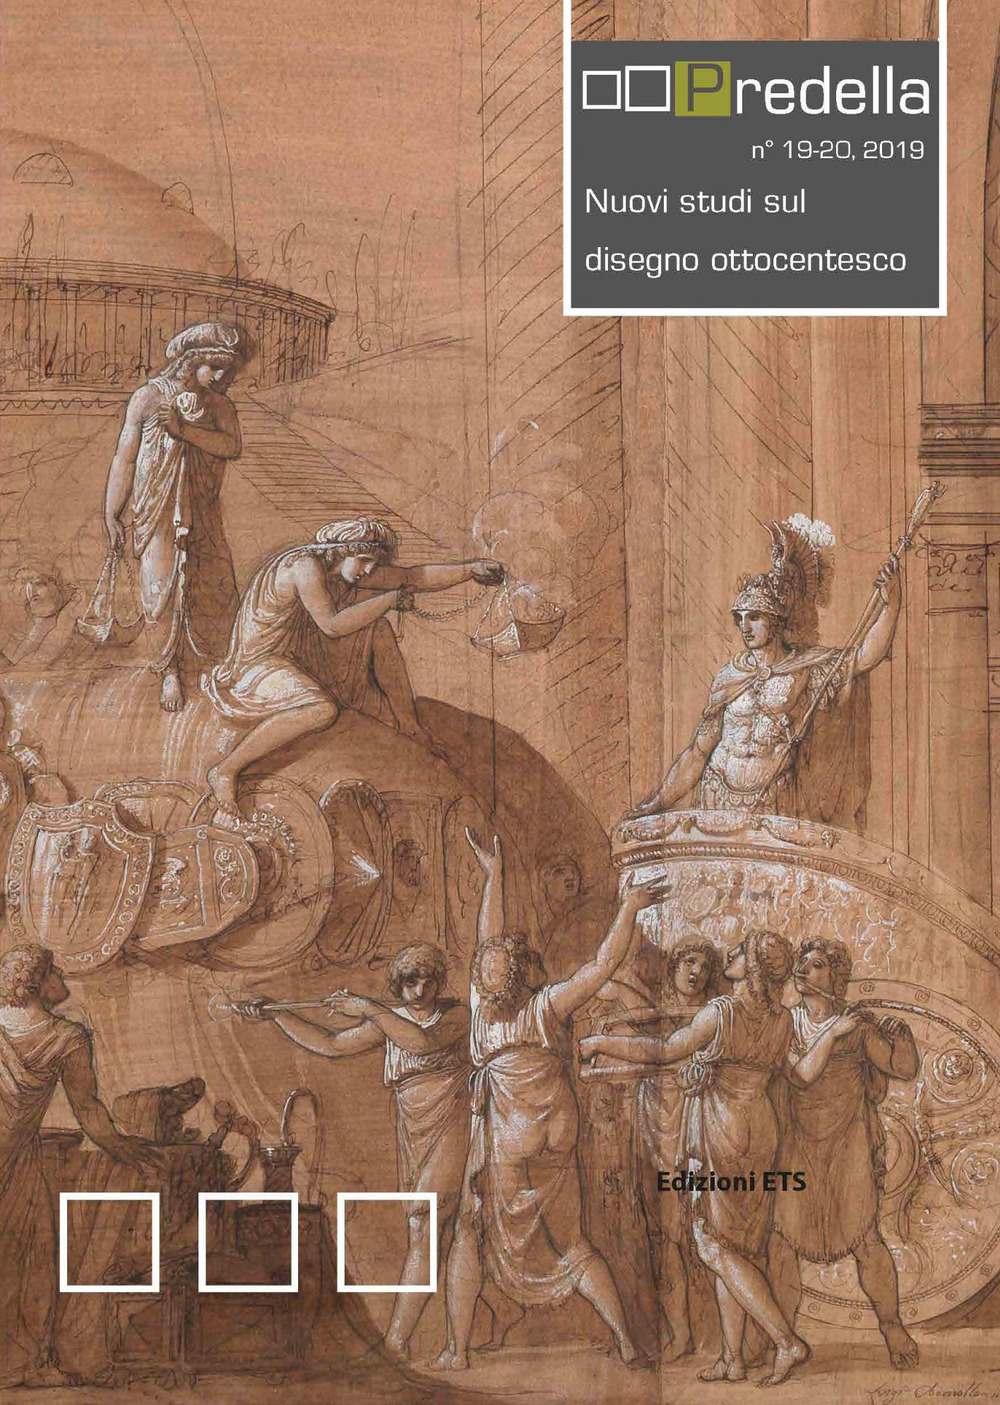 Predella (2019). Vol. 19-20: Nuovi studi sul disegno ottocentesco